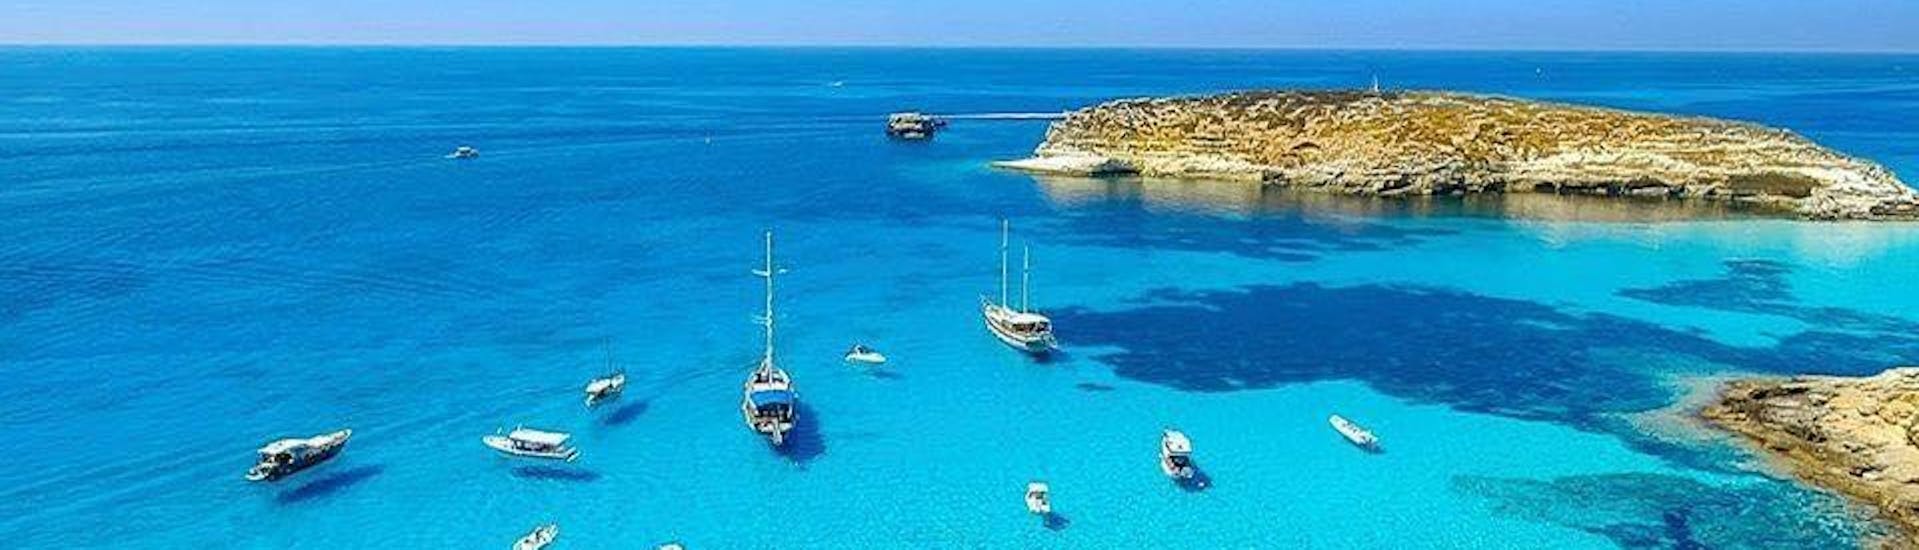 Prachtige baai met turquoise water gezien tijdens Boottocht rond Lampedusa met Lunch met Gita in Barca con Liliana Lampedusa.